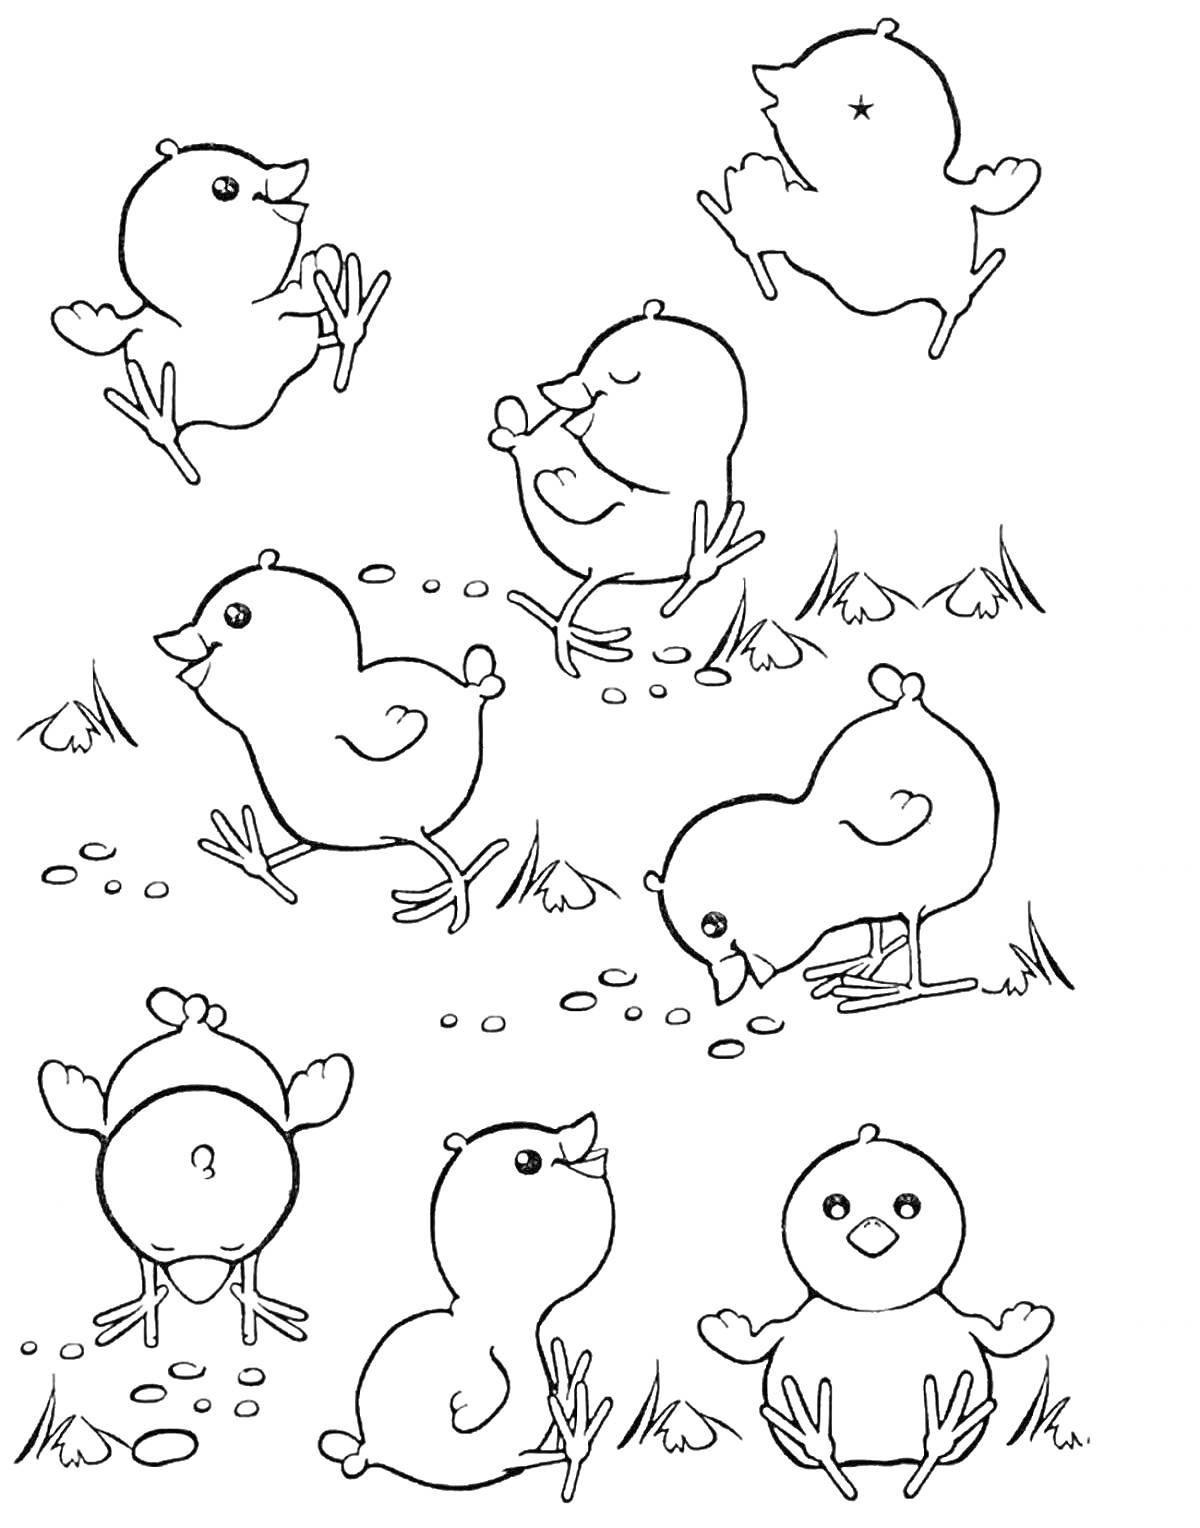 Семь цыплят, гуляющих и играющих на траве